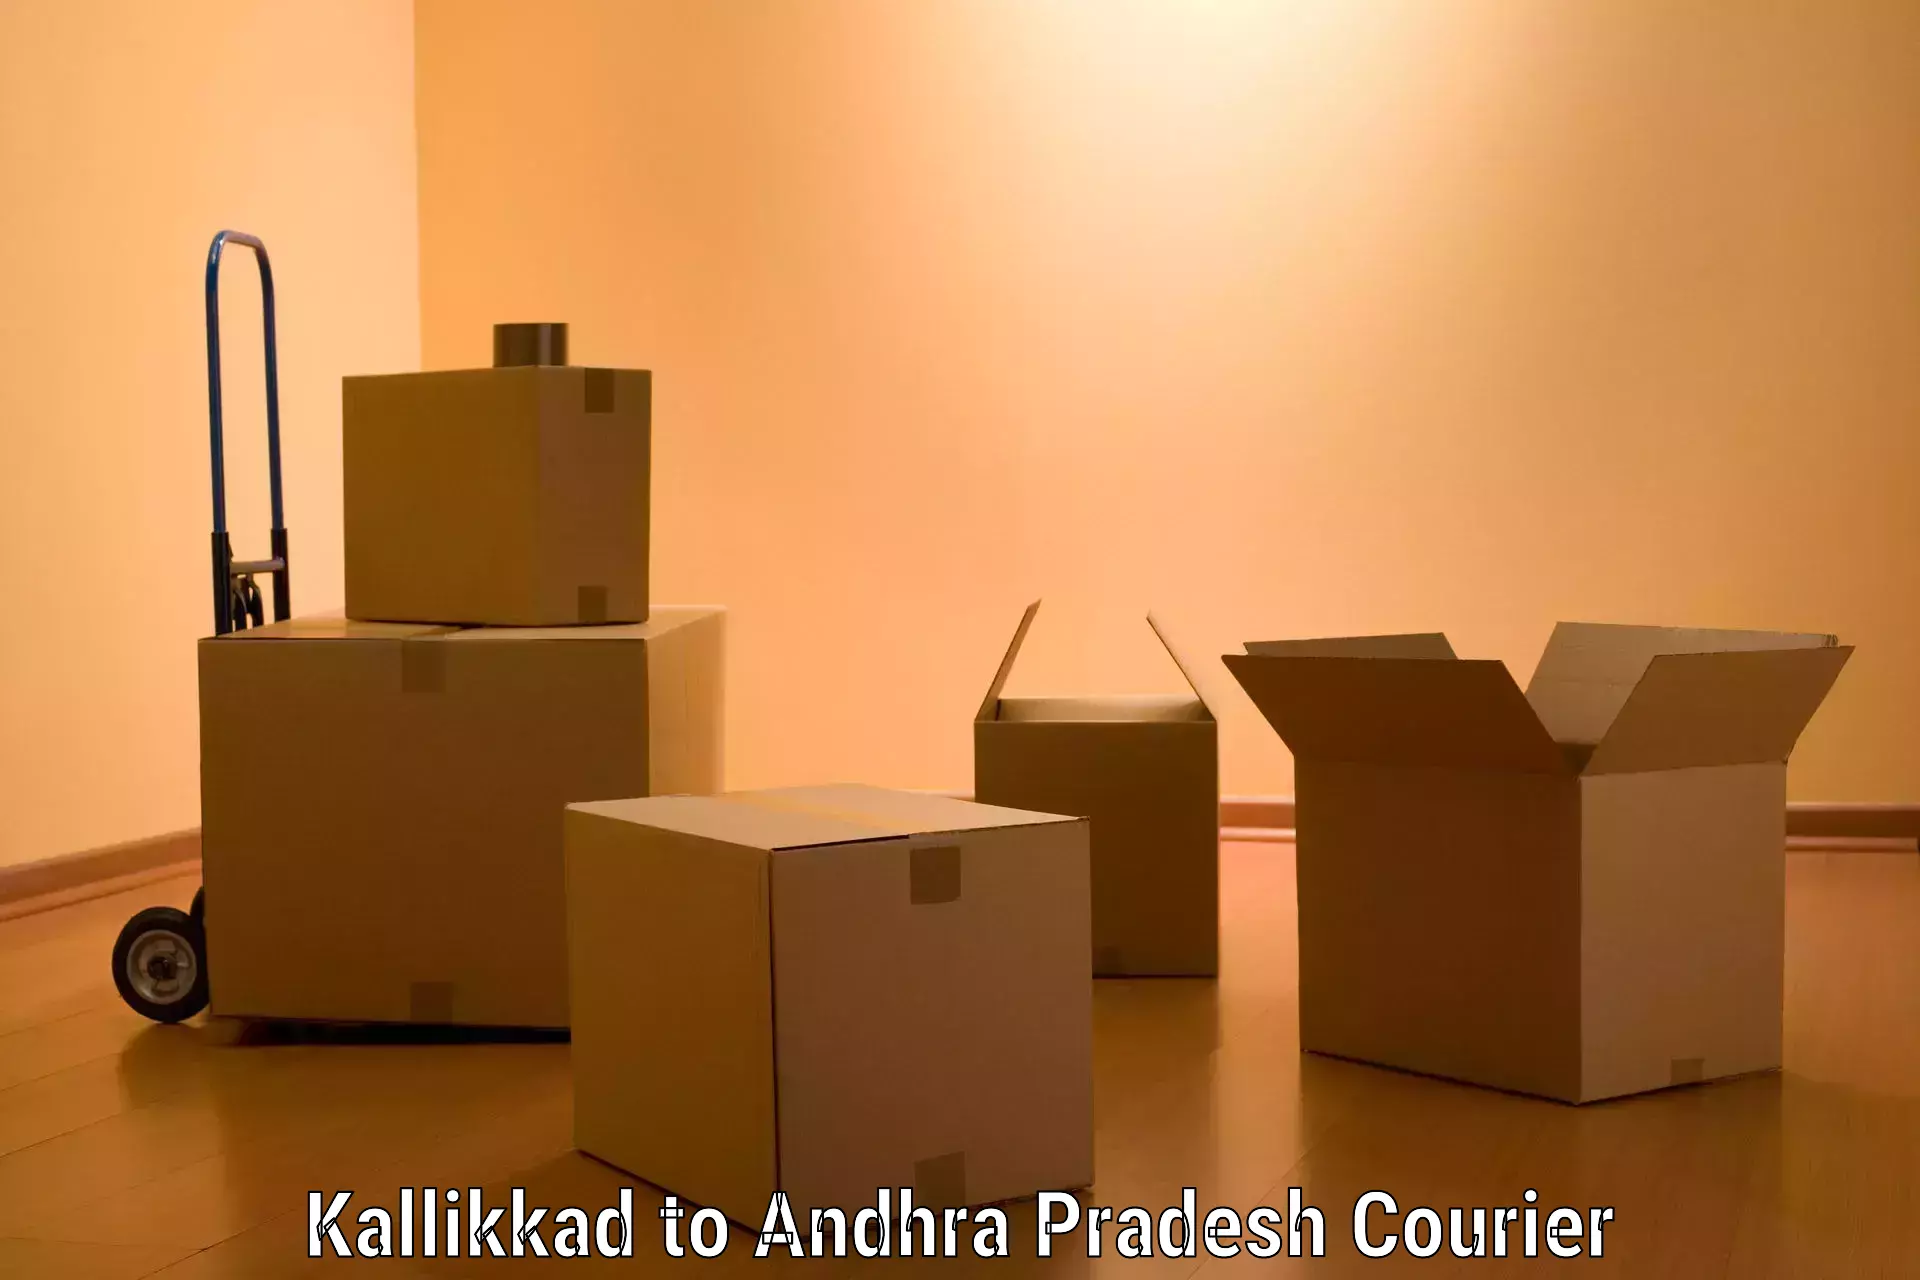 Moving and handling services Kallikkad to Konthamuru